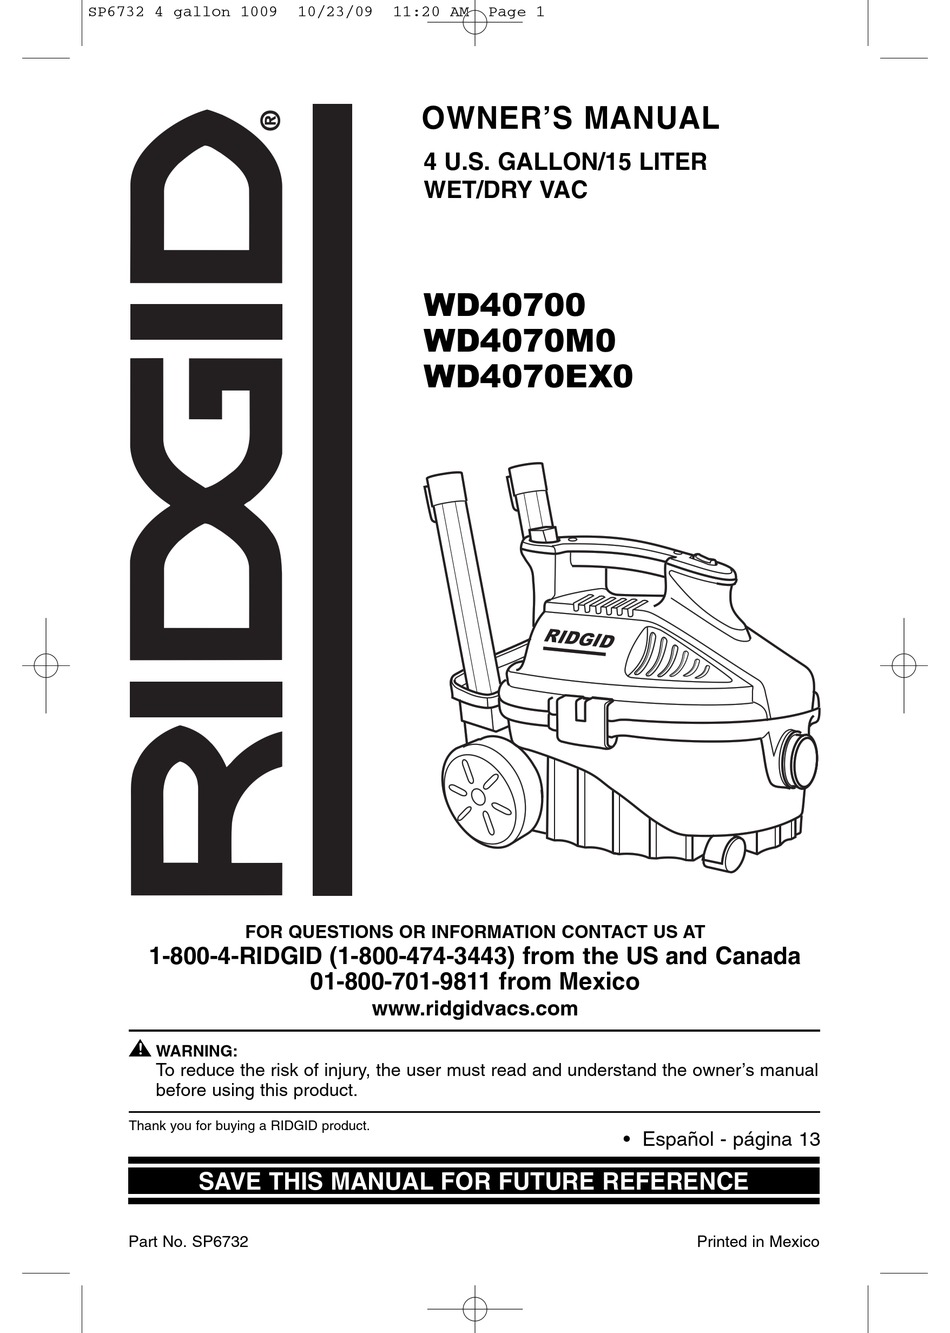 RIDGID WD40700 OWNER'S MANUAL Pdf Download | ManualsLib